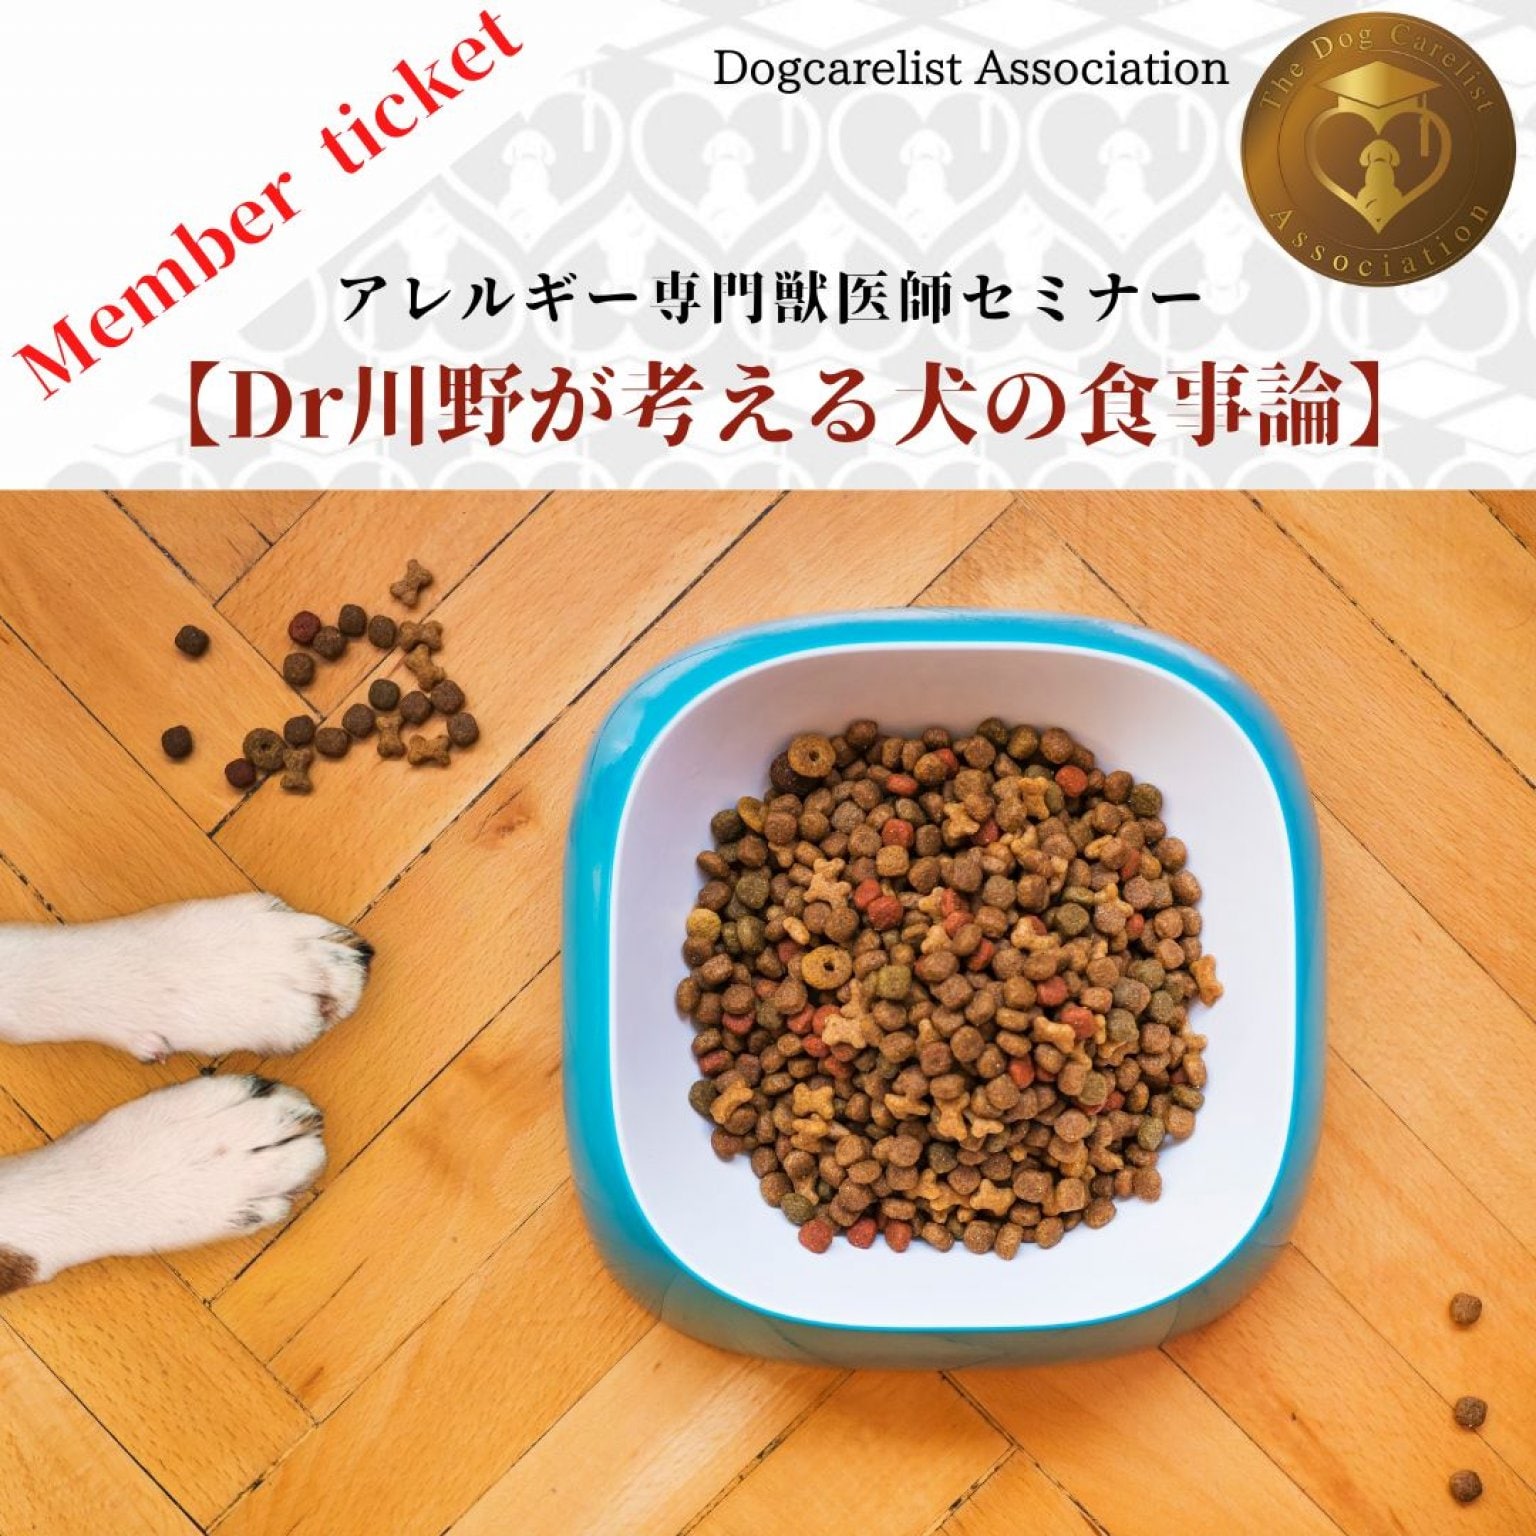 [メンバー価格] アトピーアレルギー専門獣医師『Dr川野が考える愛犬の食事論』セミナー